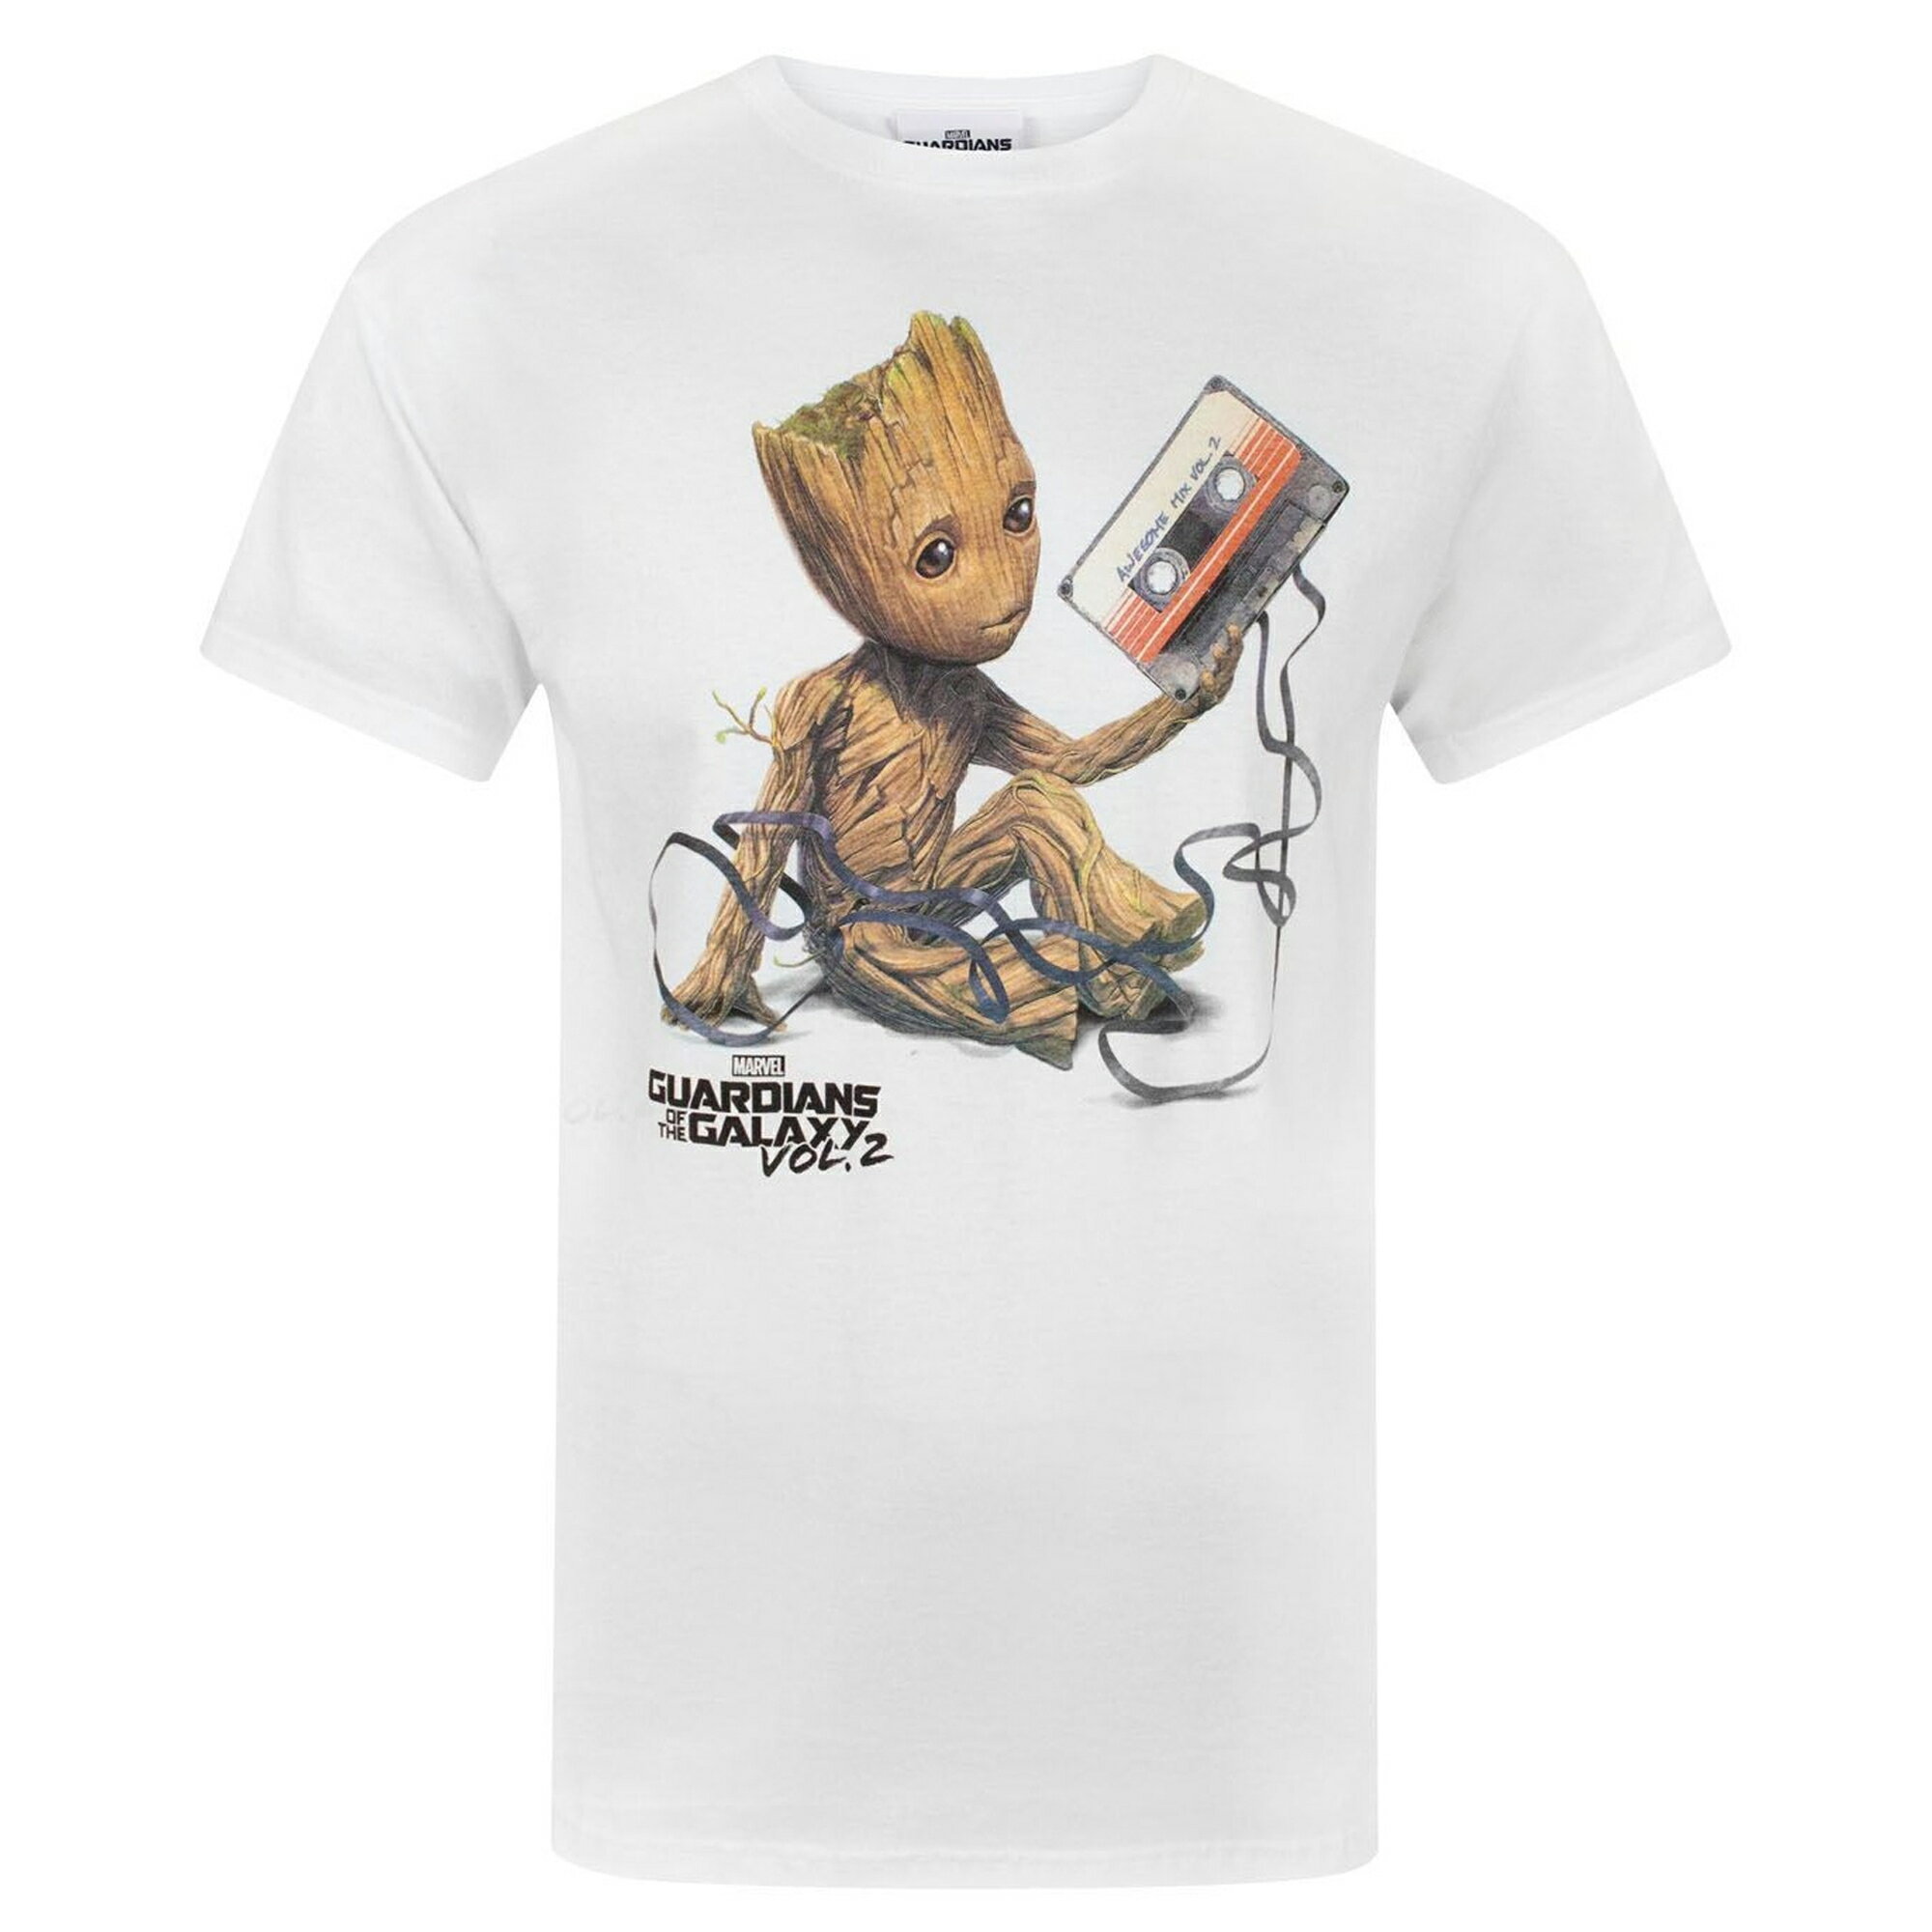 (ガーディアンズ オブ ギャラクシー) Guardians Of The Galaxy オフィシャル商品 メンズ Vol 2 グルート テープ Tシャツ 半袖 カットソー トップス 【海外通販】